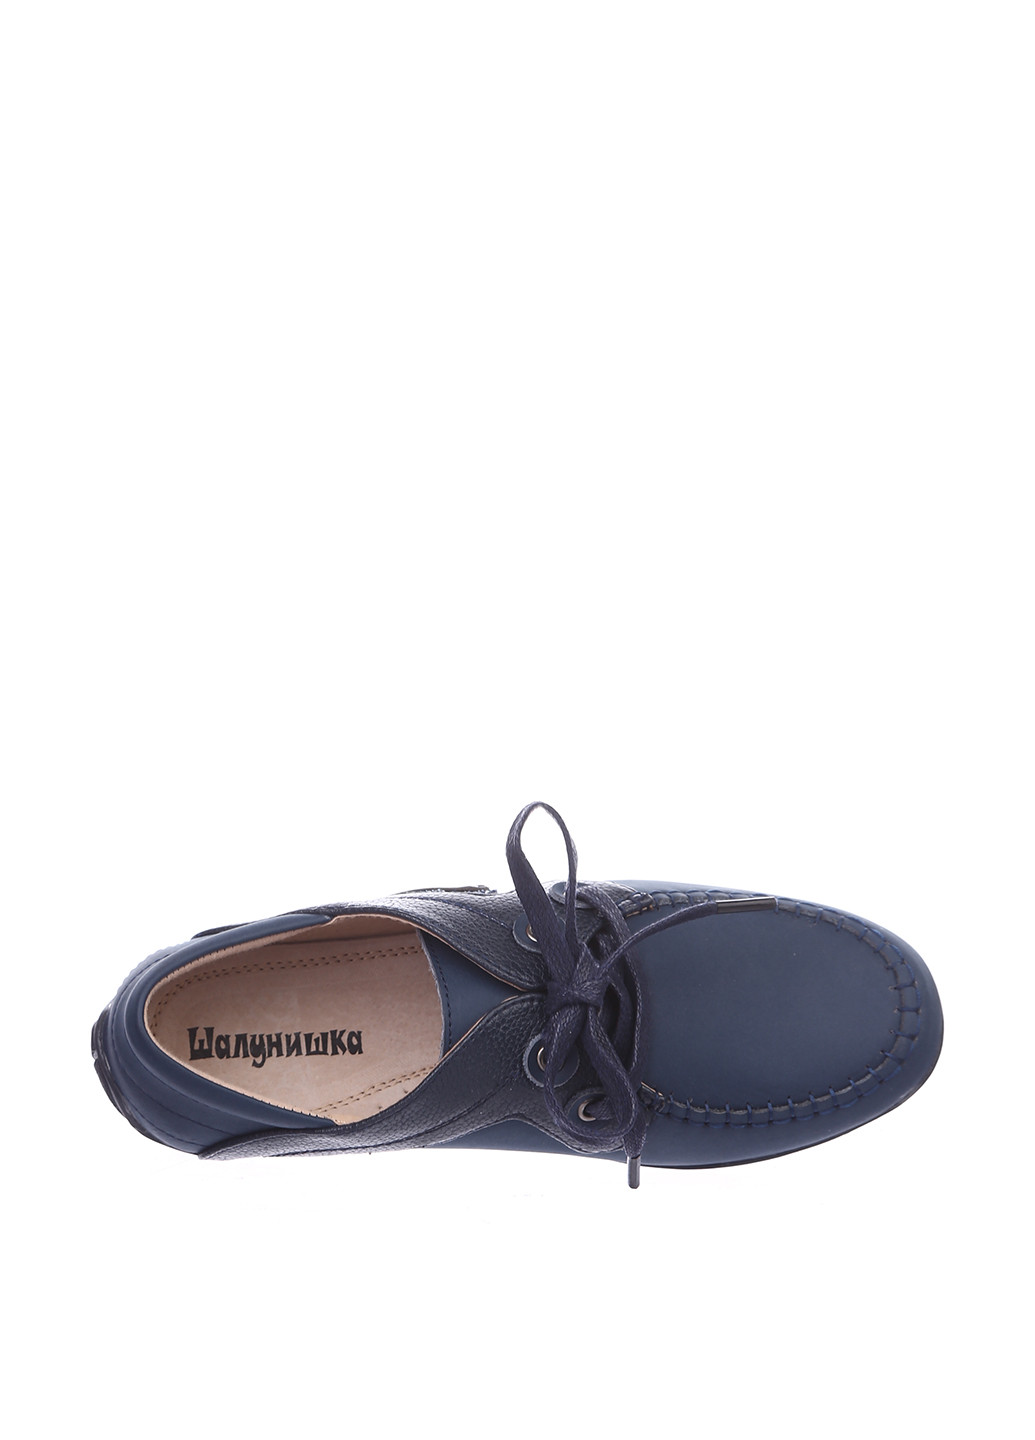 Темно-синие мокасины Шалунишка со шнурками